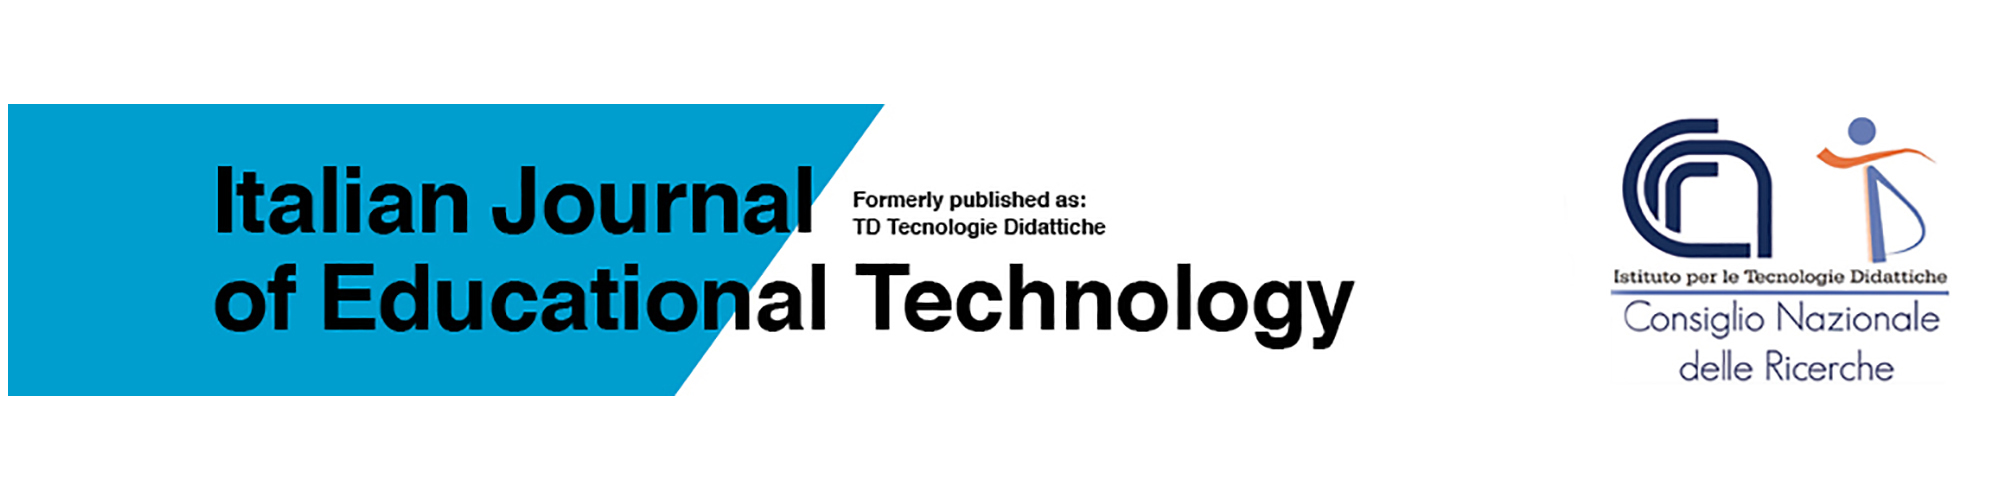 Le copertine di alcuni numeri di TD Tecnologie Didattiche